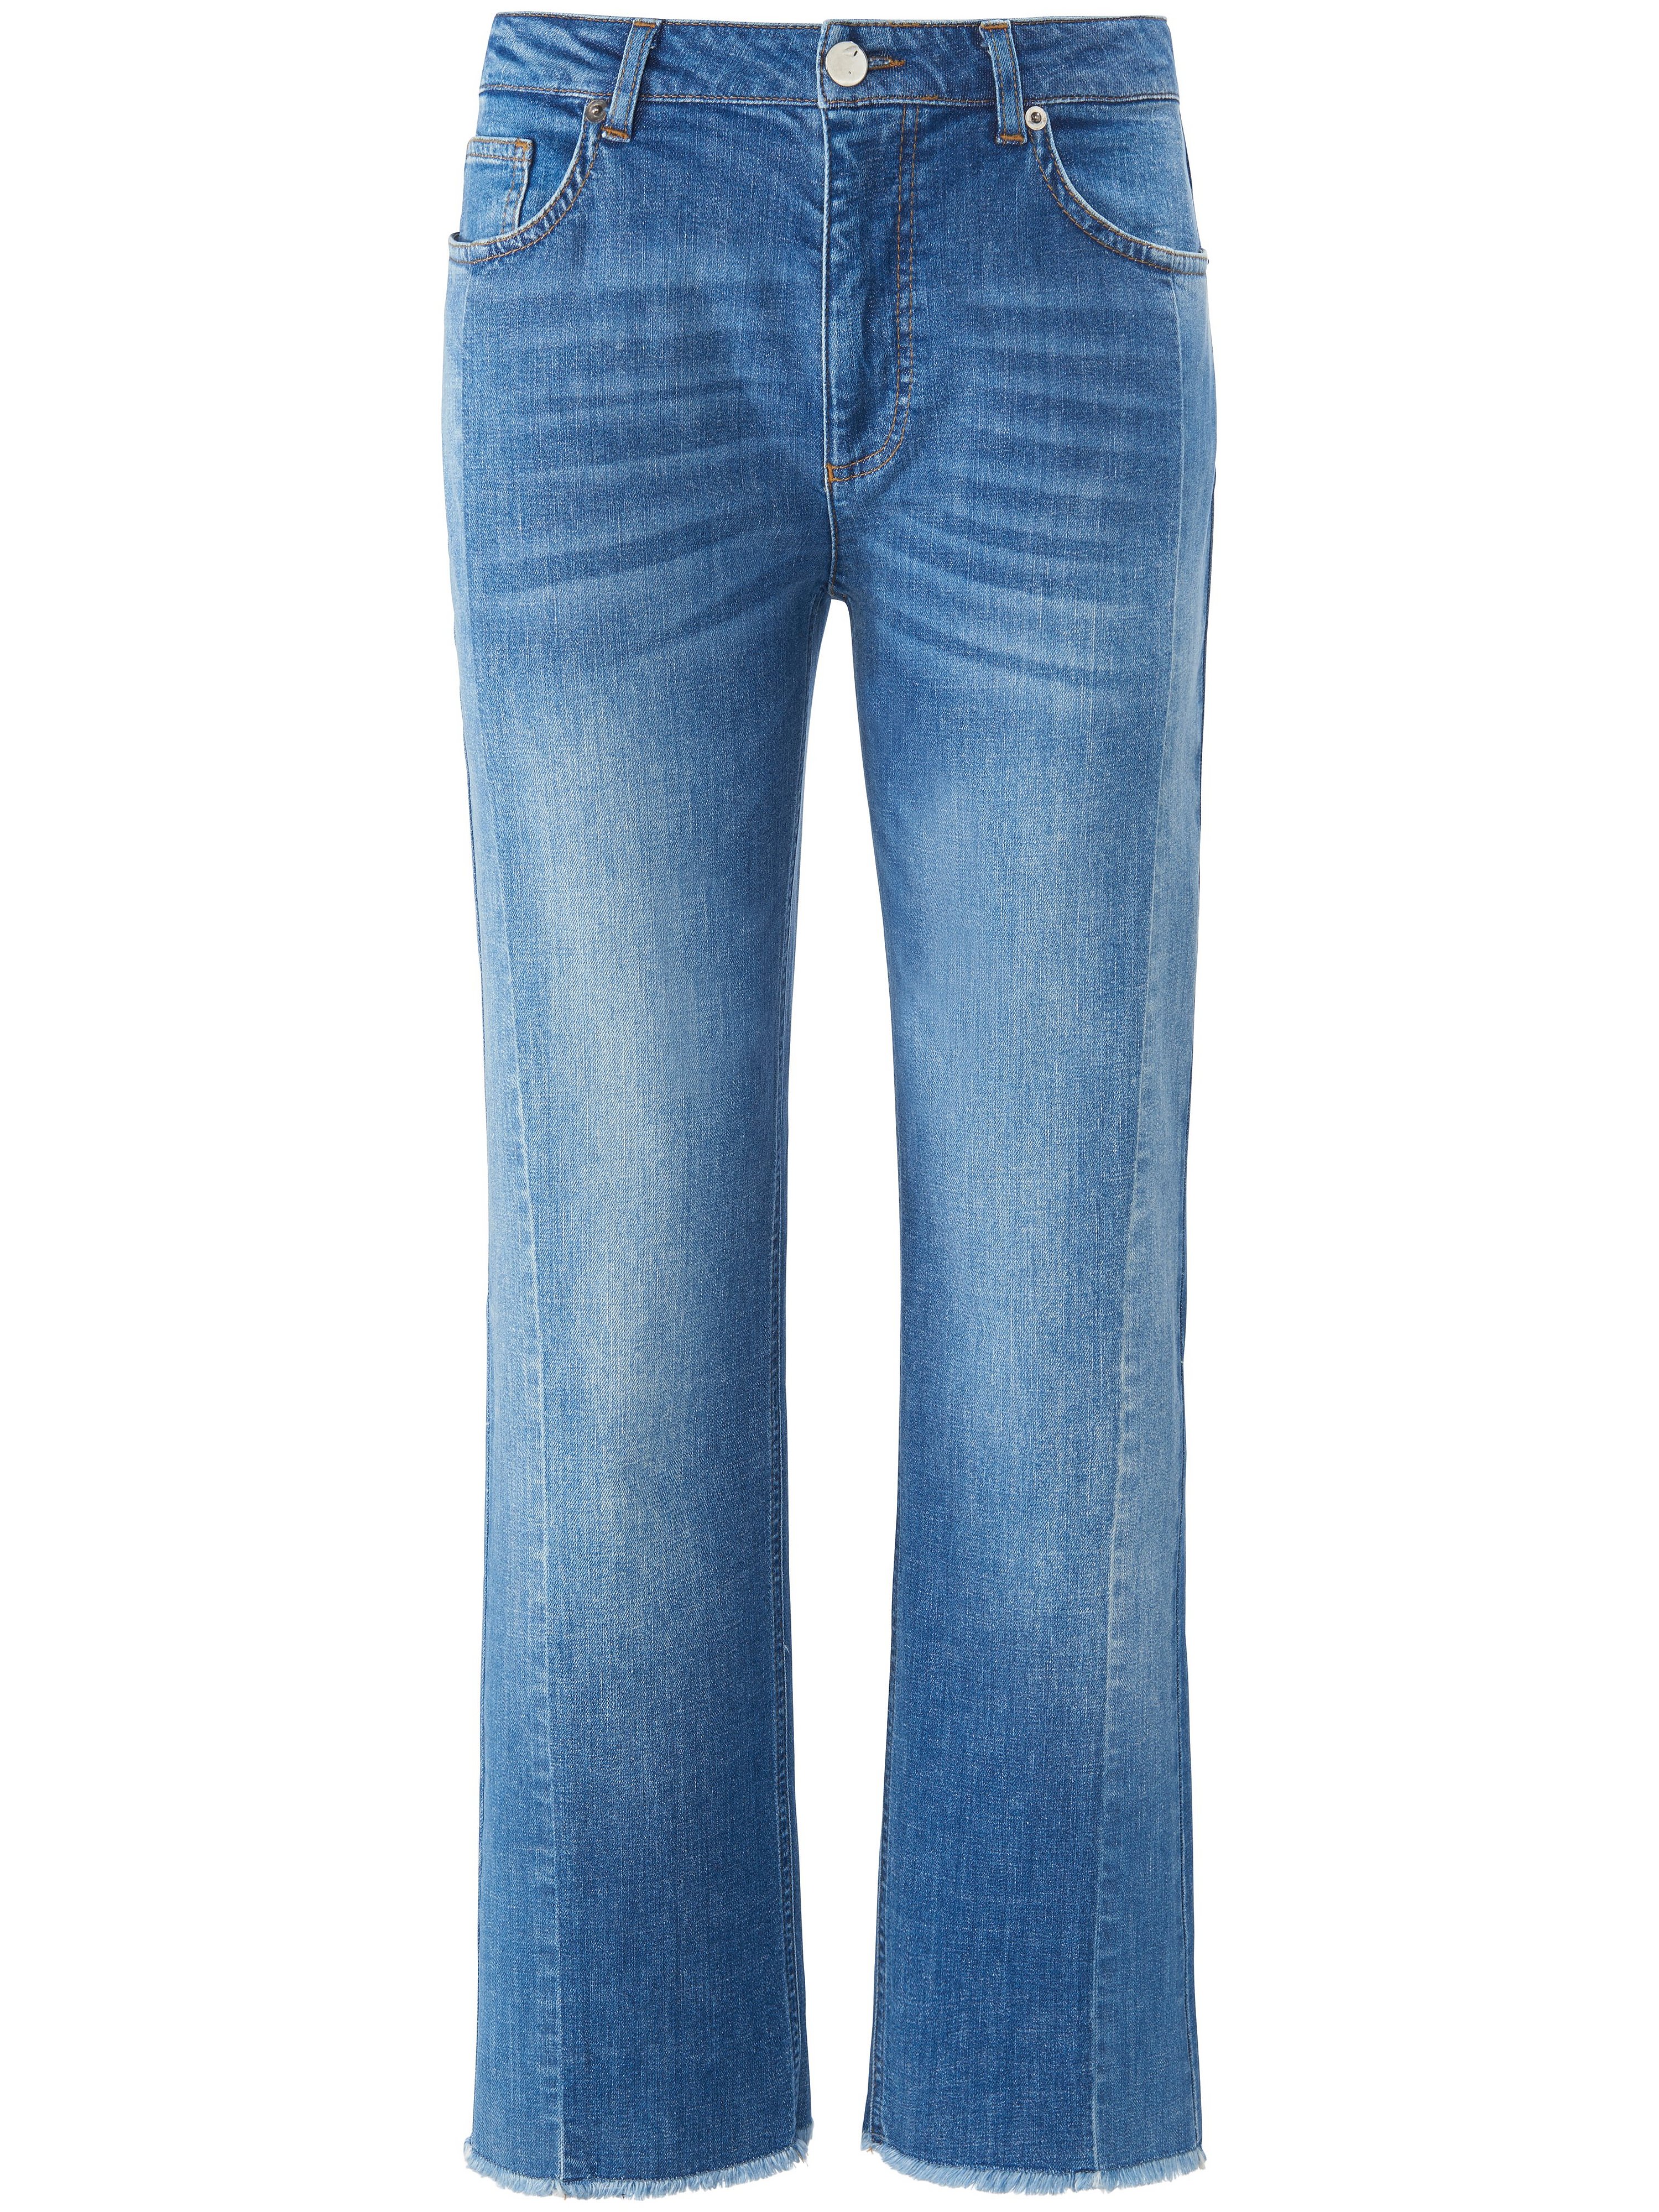 Enkellange Wide Fit jeans in 5 pocketsmodel Van DAY.LIKE denim